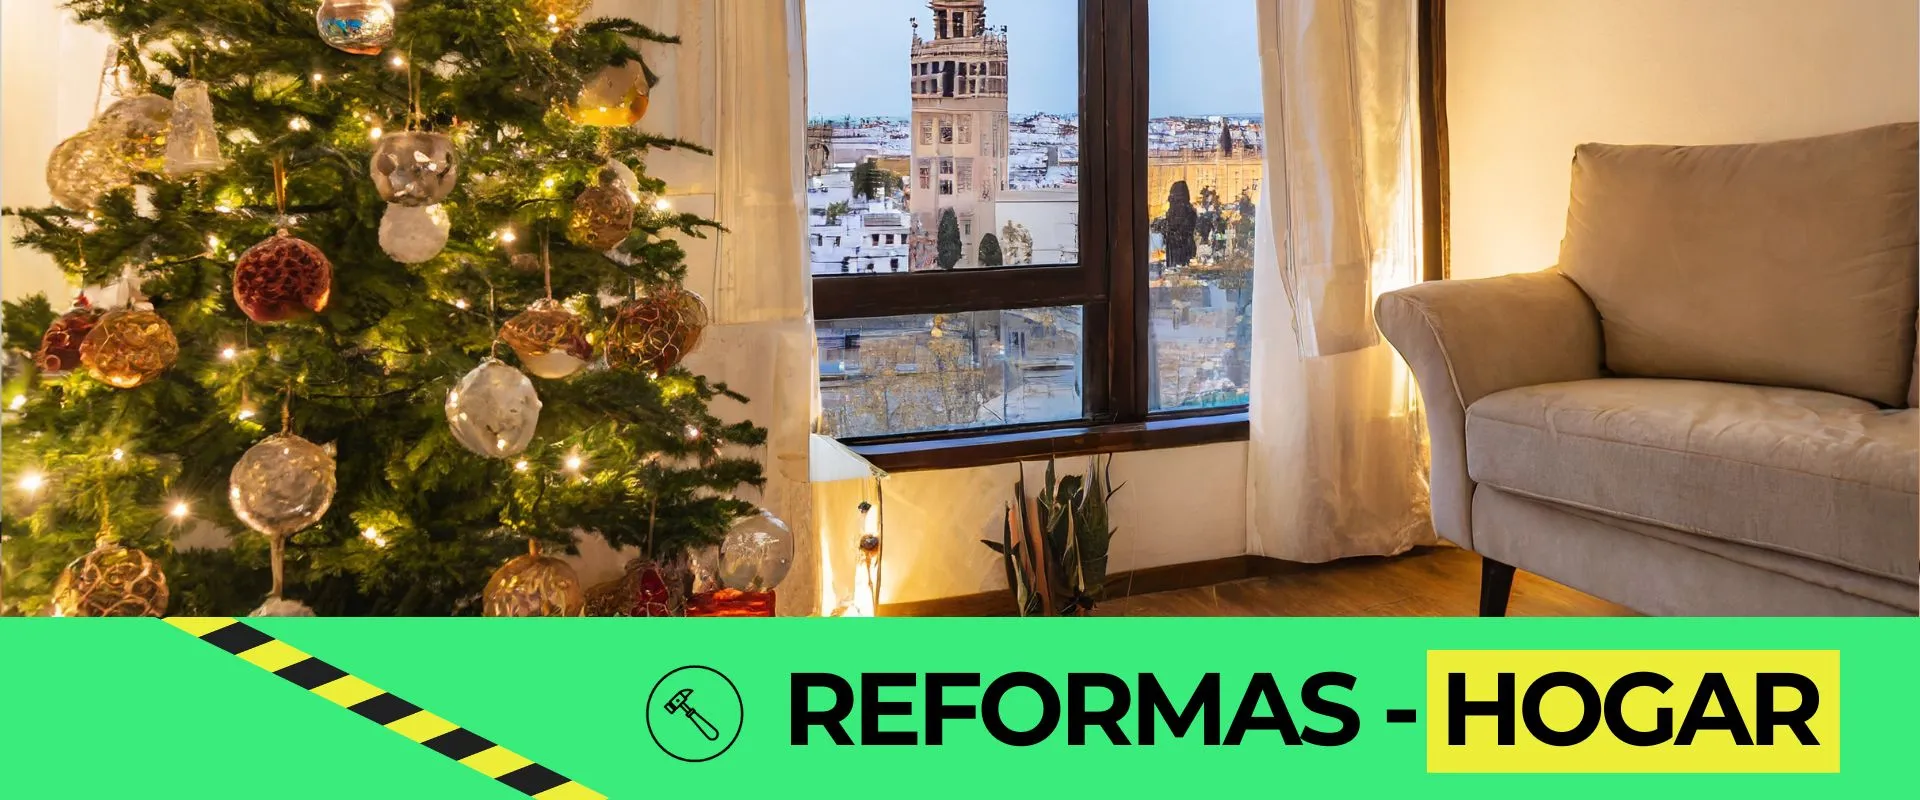 Reformas hogar Sevilla